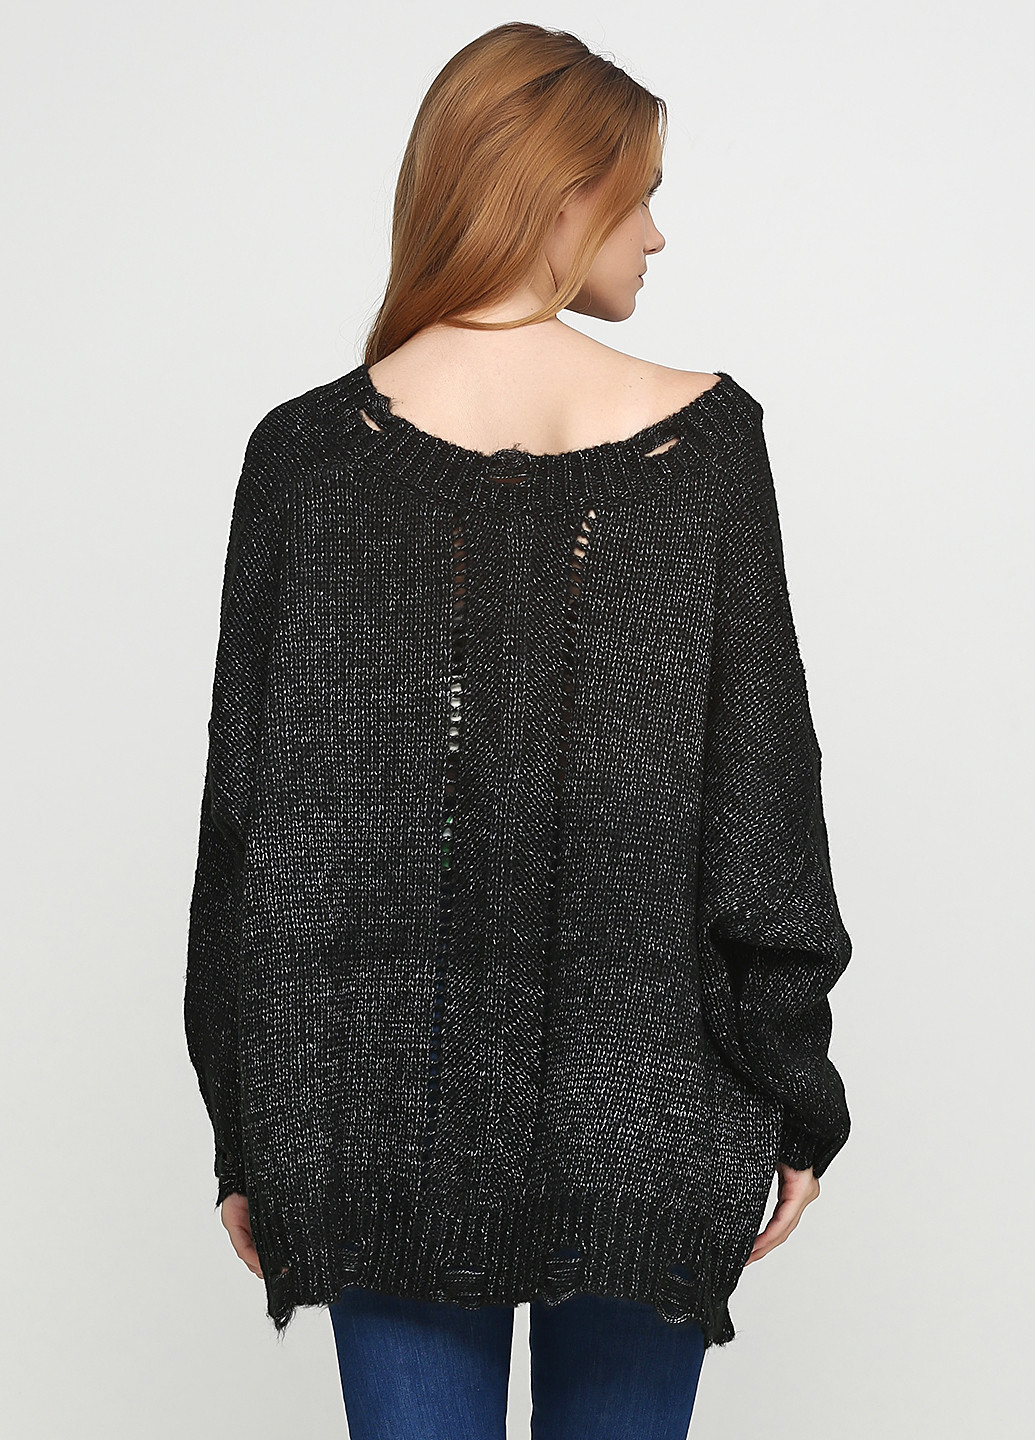 Черный зимний пуловер пуловер Zafferano